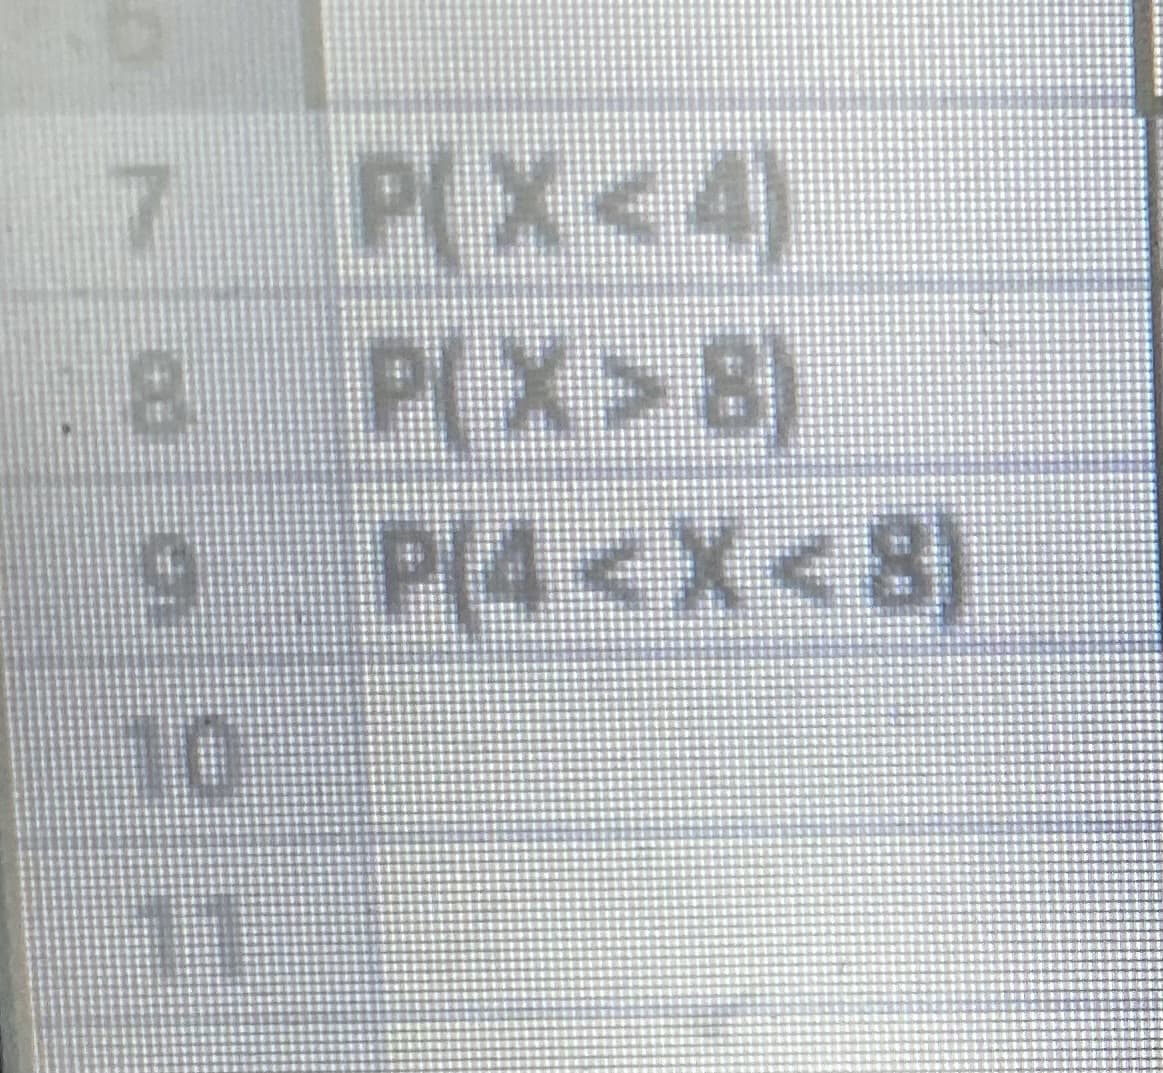 P(X<4)
8 P(X>8)
9 P(4<X<8)
7 P(X<4)
10
11
